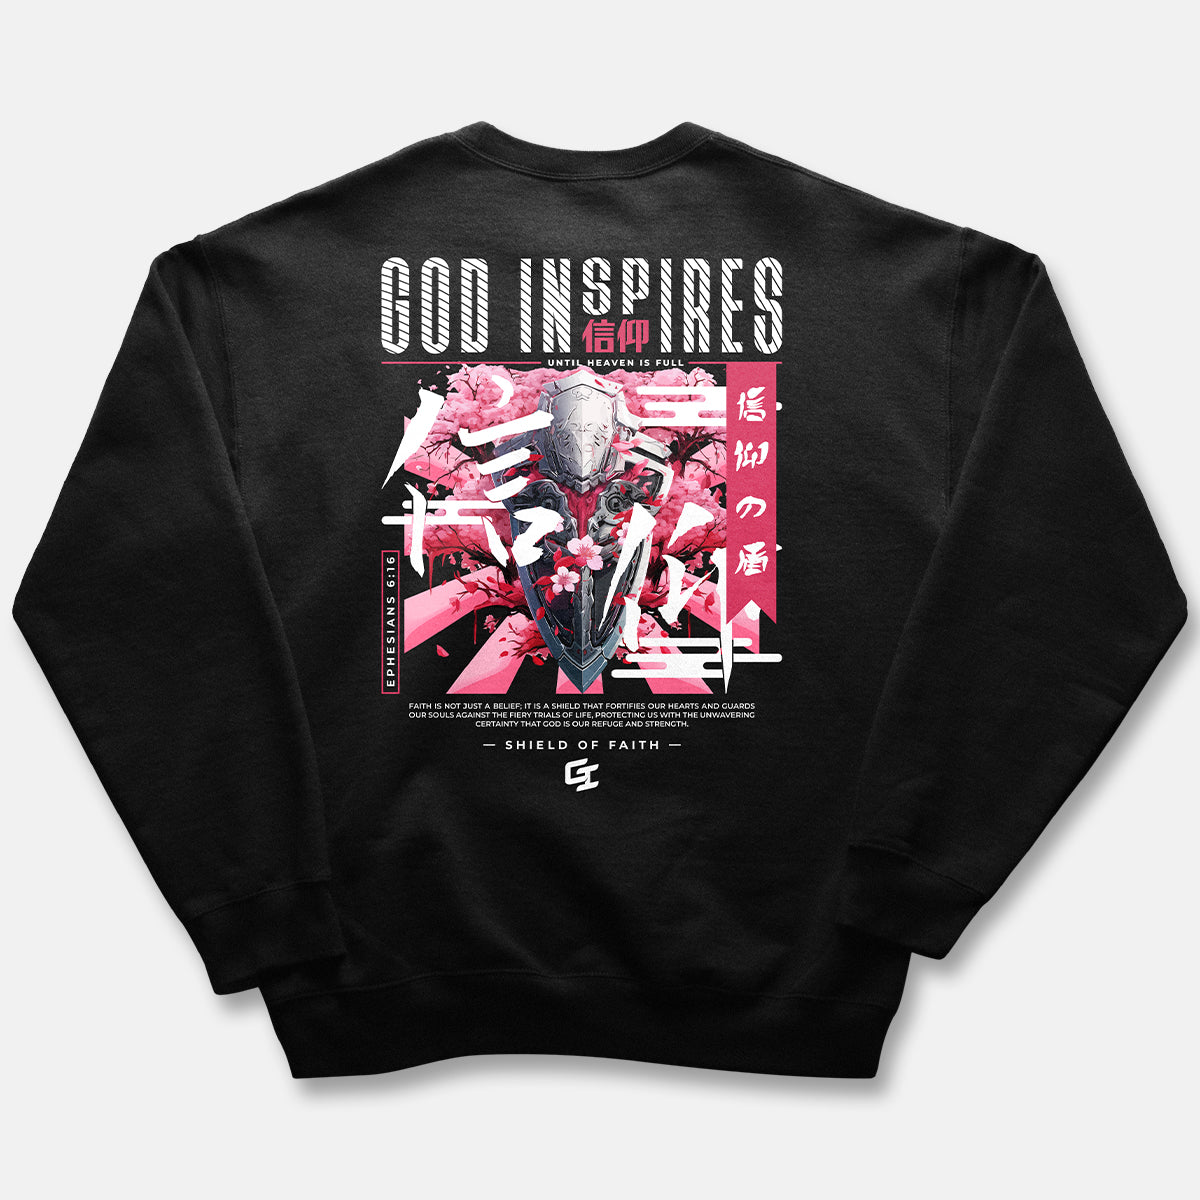 God Inspires